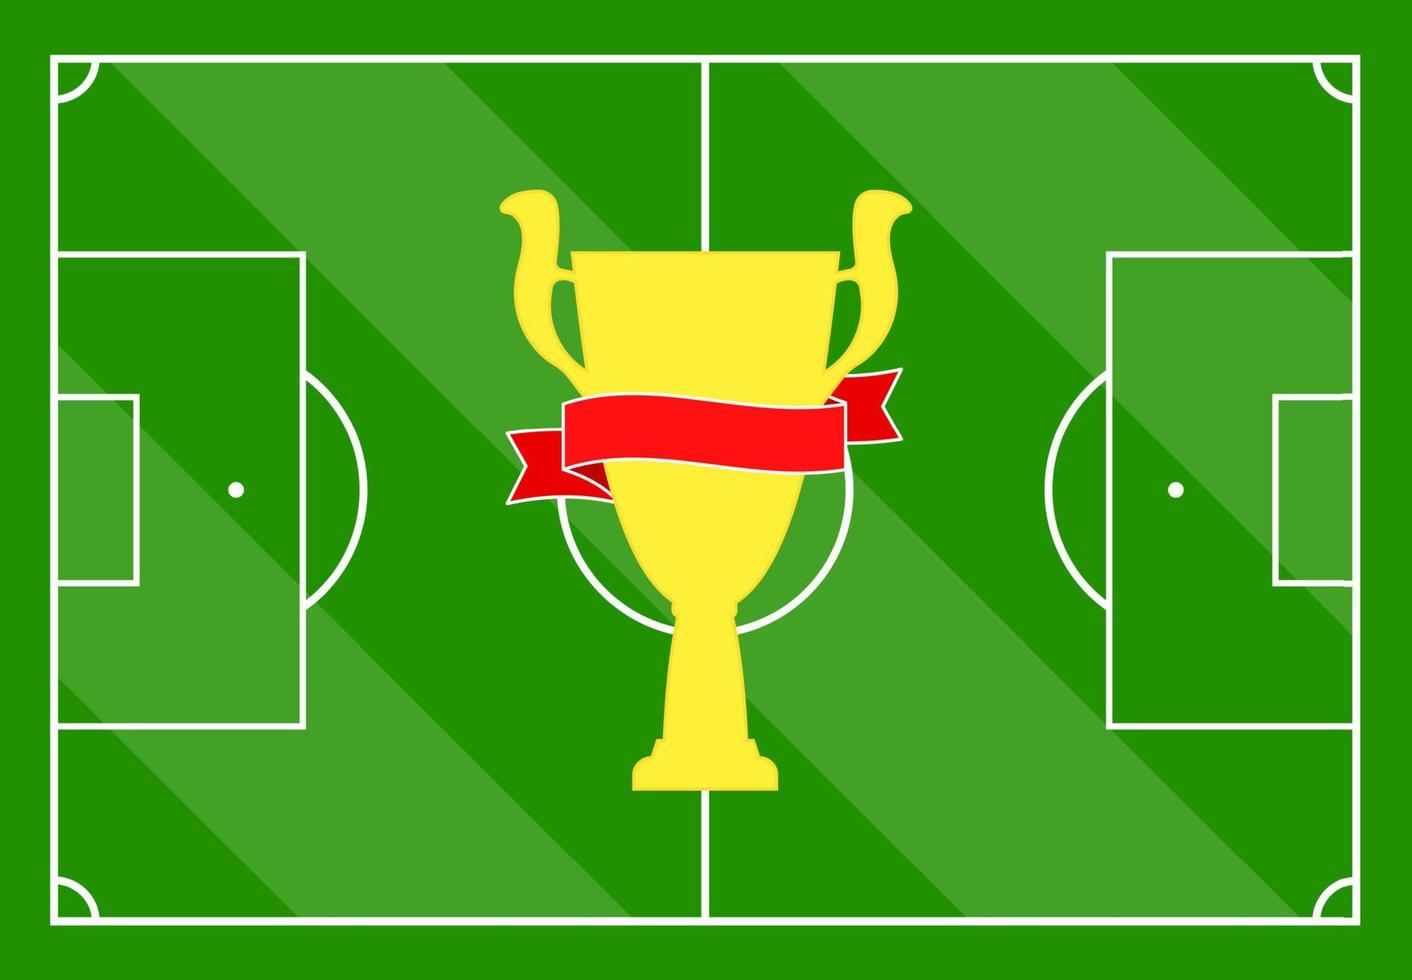 Amerikaans voetbal veld- met groen gras en met een goud kop met een rood lintje. vector illustratie